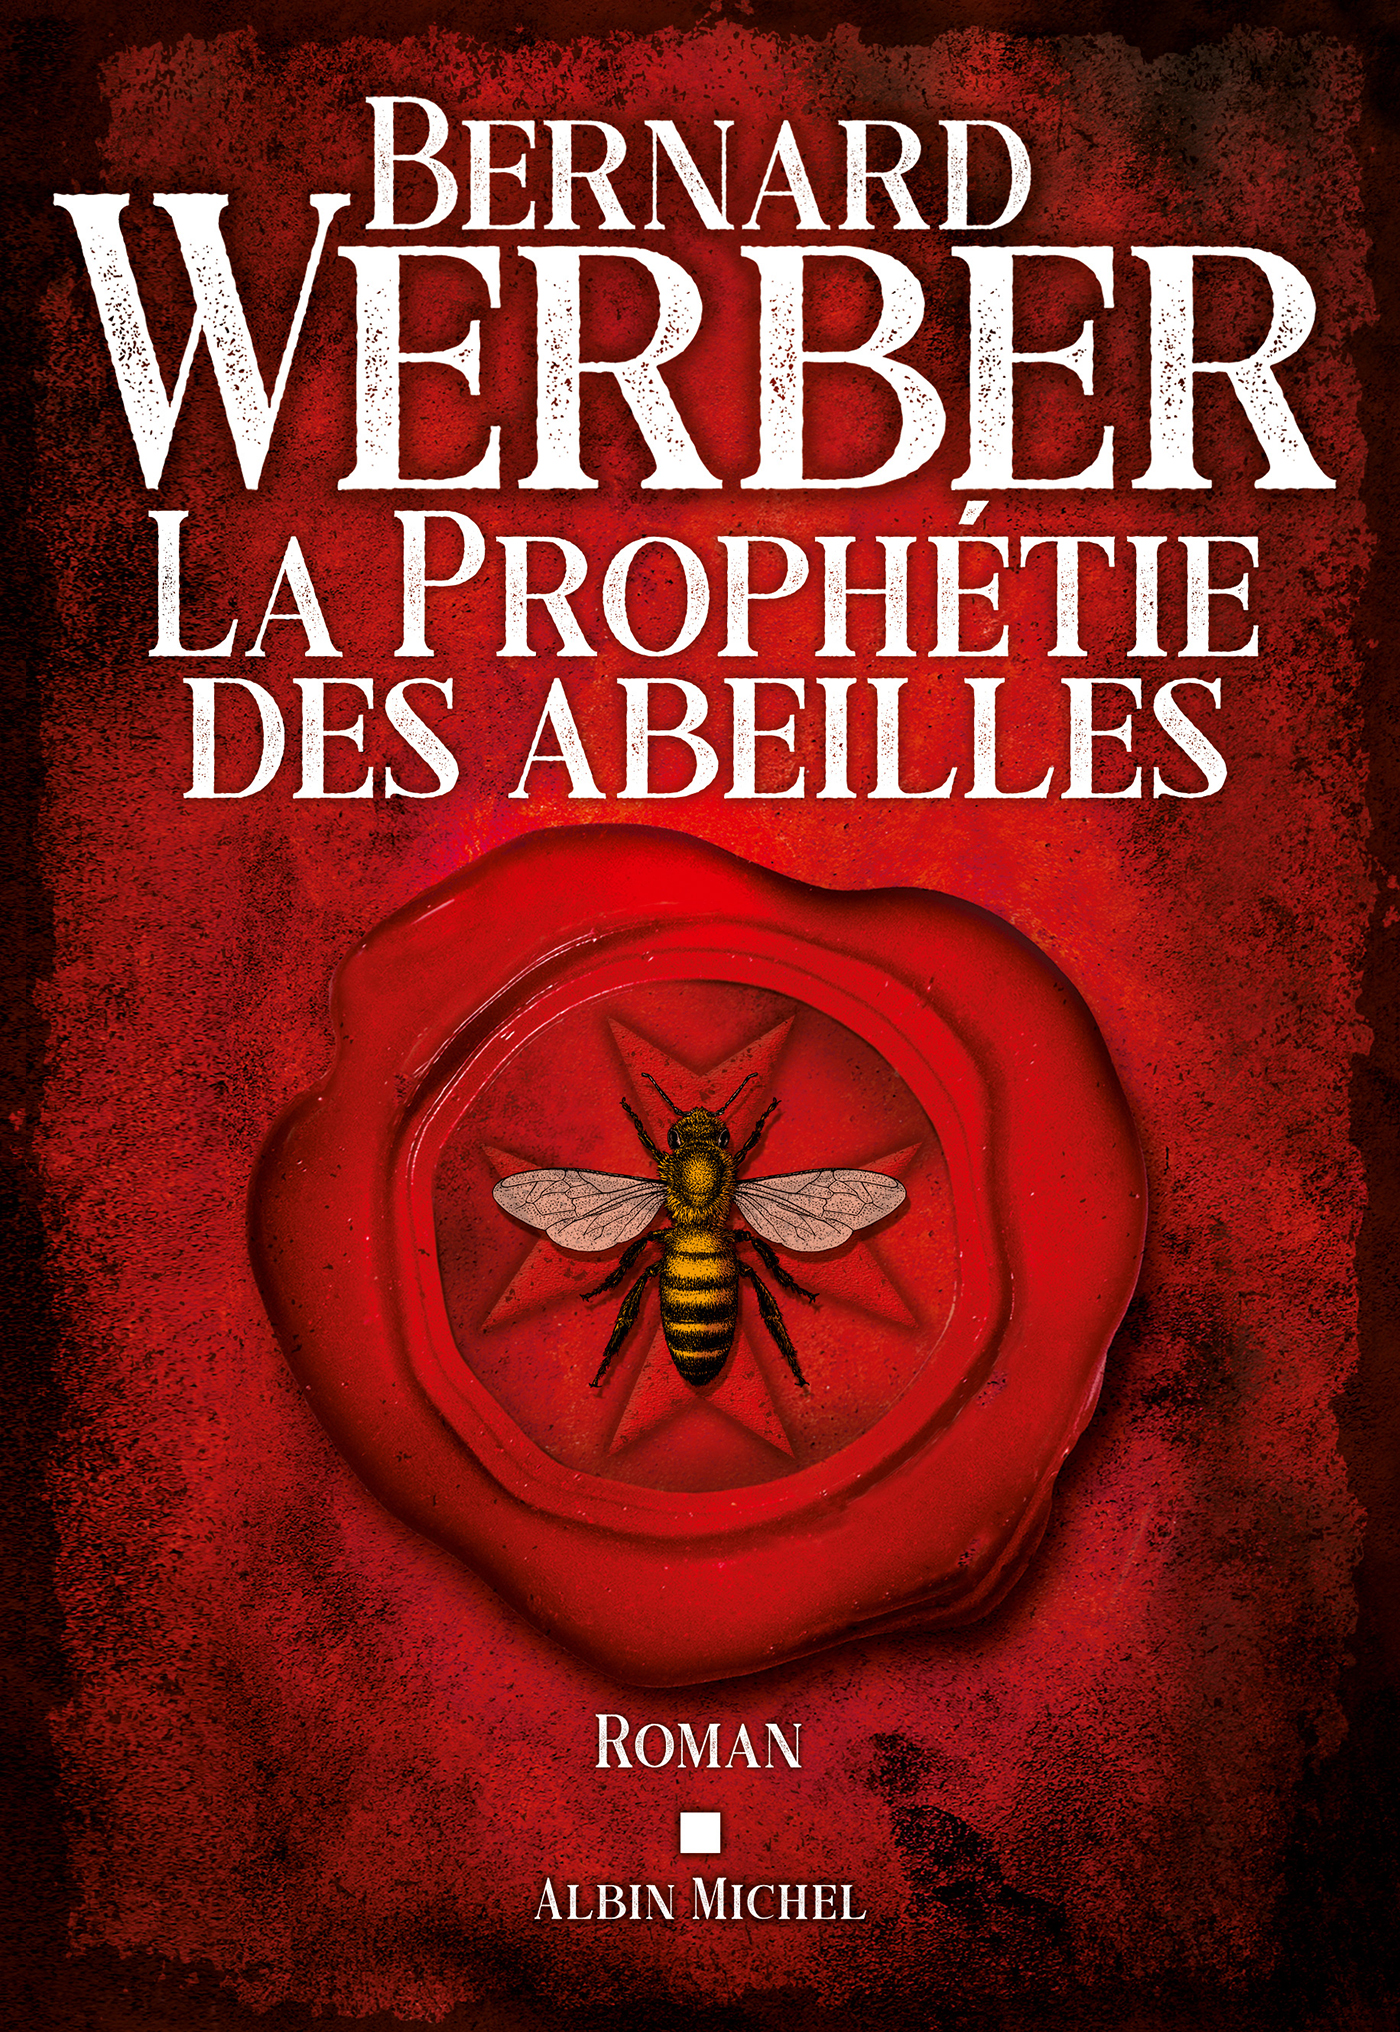 Afficher "La Prophétie des abeilles"